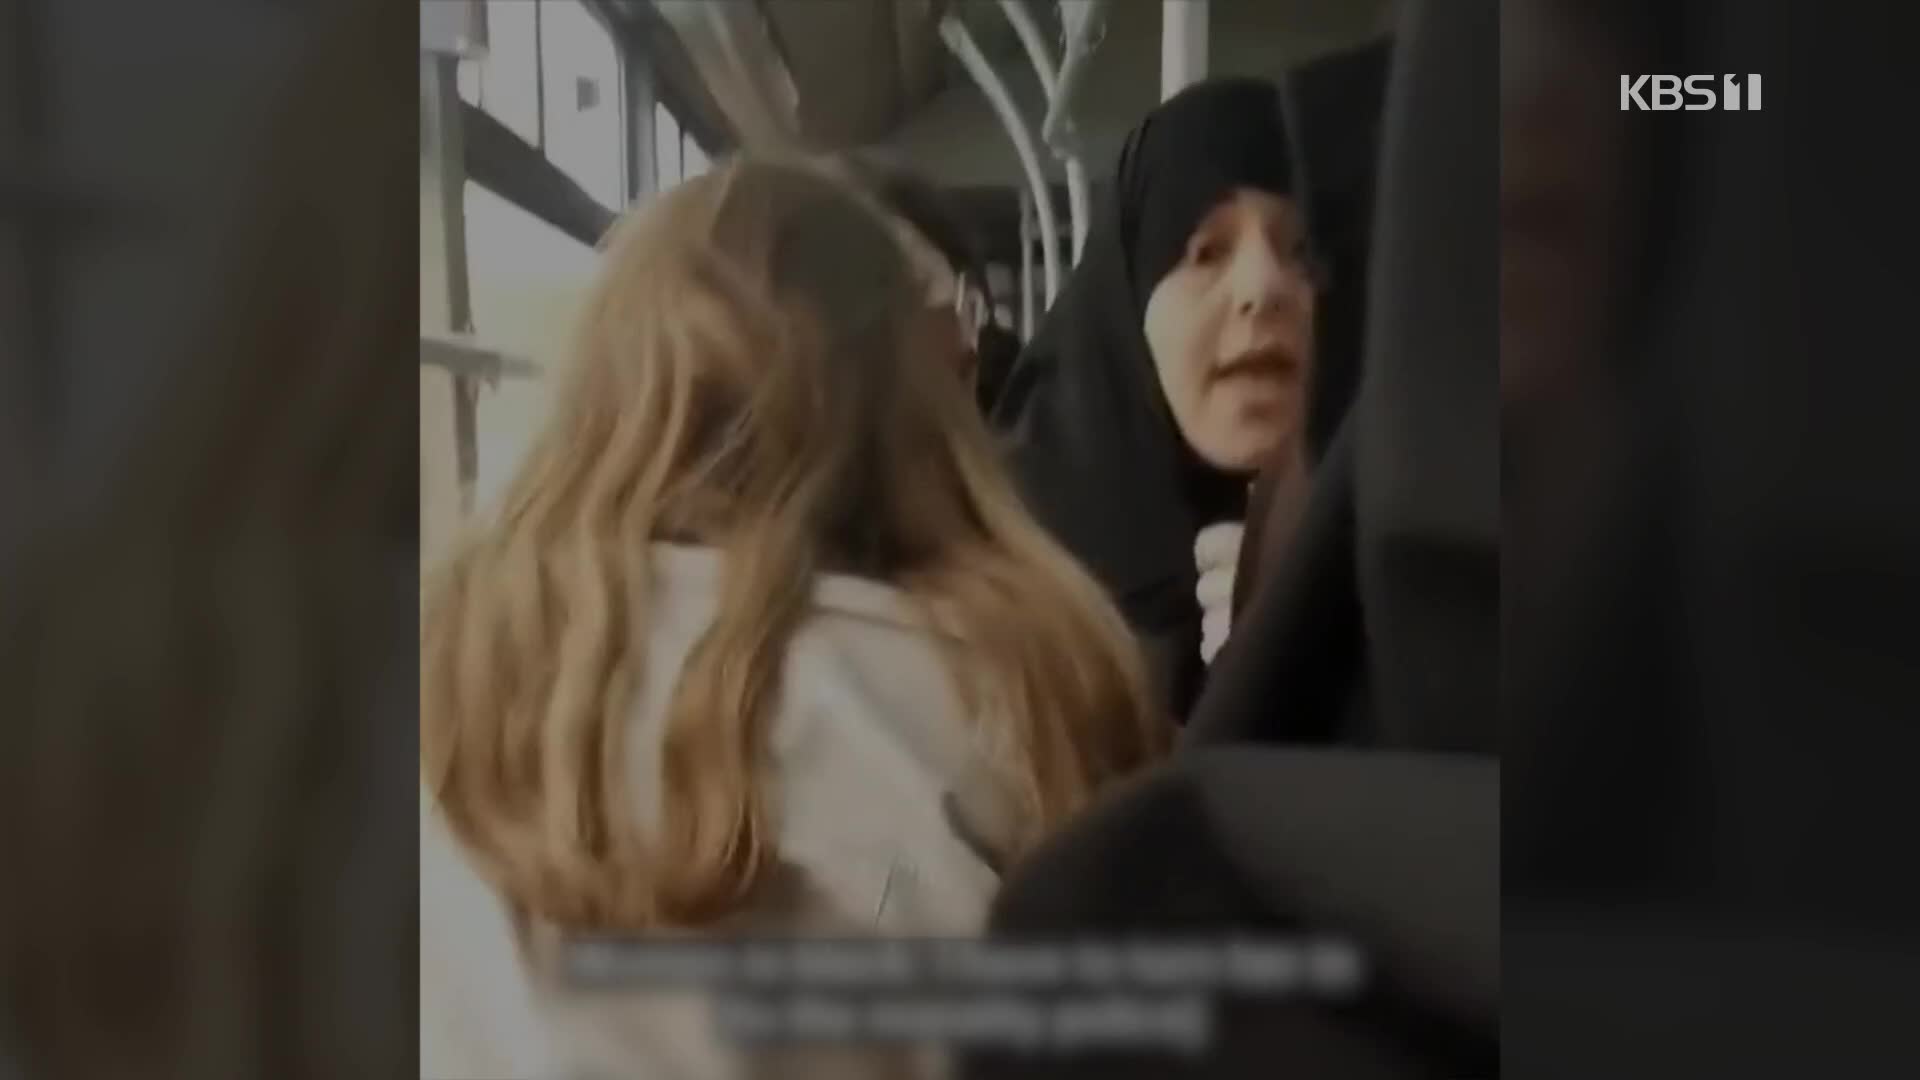 [영상] ‘히잡 미착용자’ 잡으려던 이란 ‘도덕경찰’, 버스에서 쫓겨나